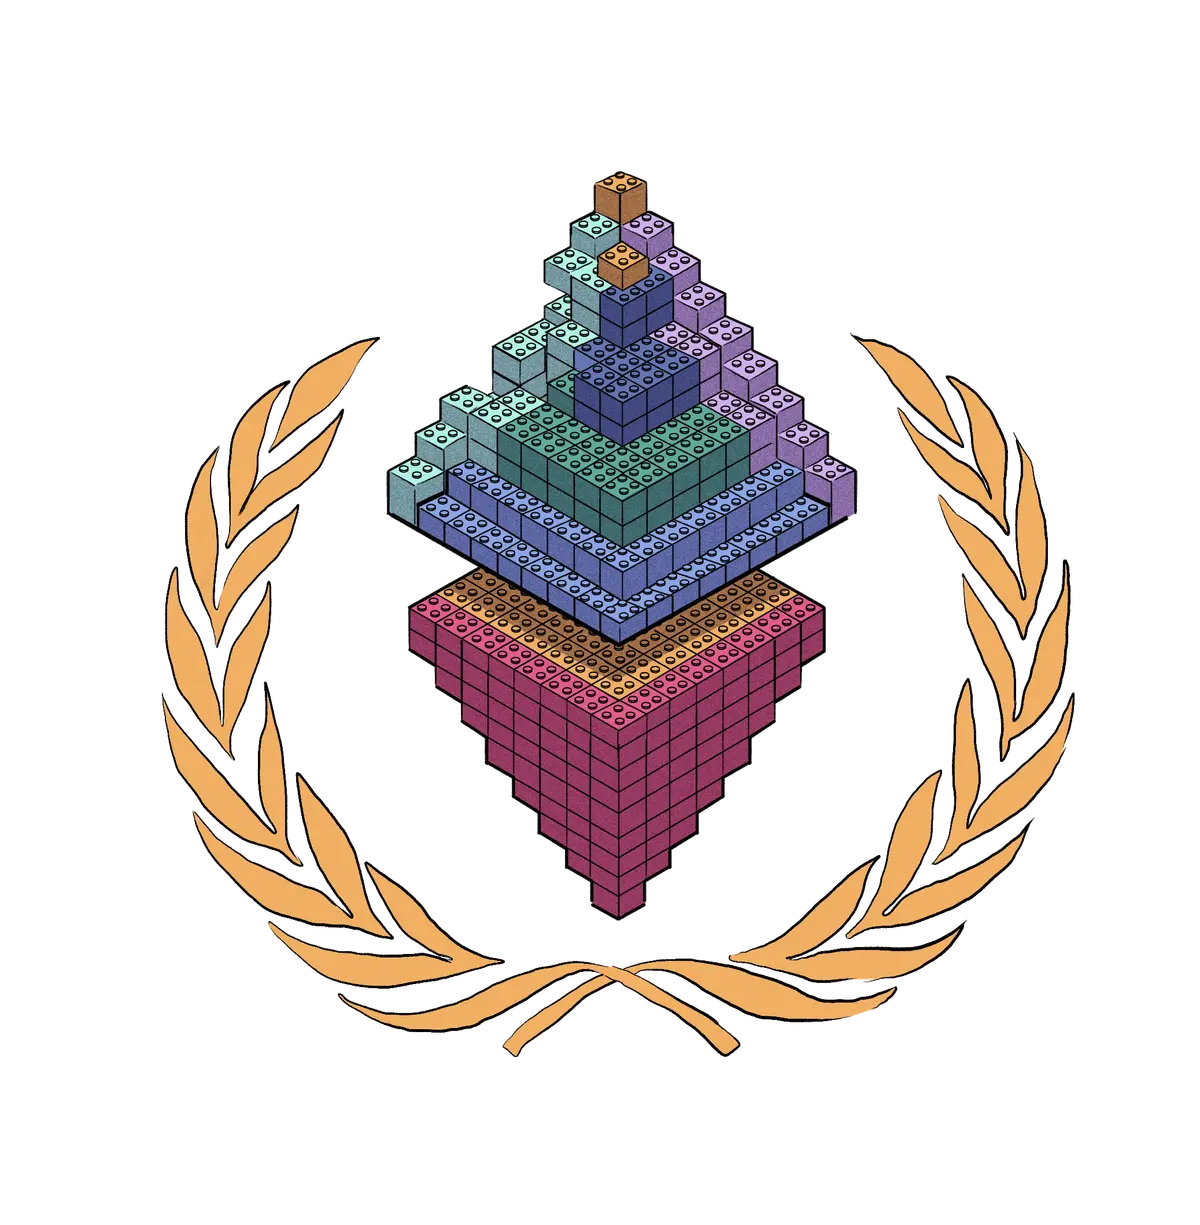 Логотип Ethereum, зроблений із блоків Lego.